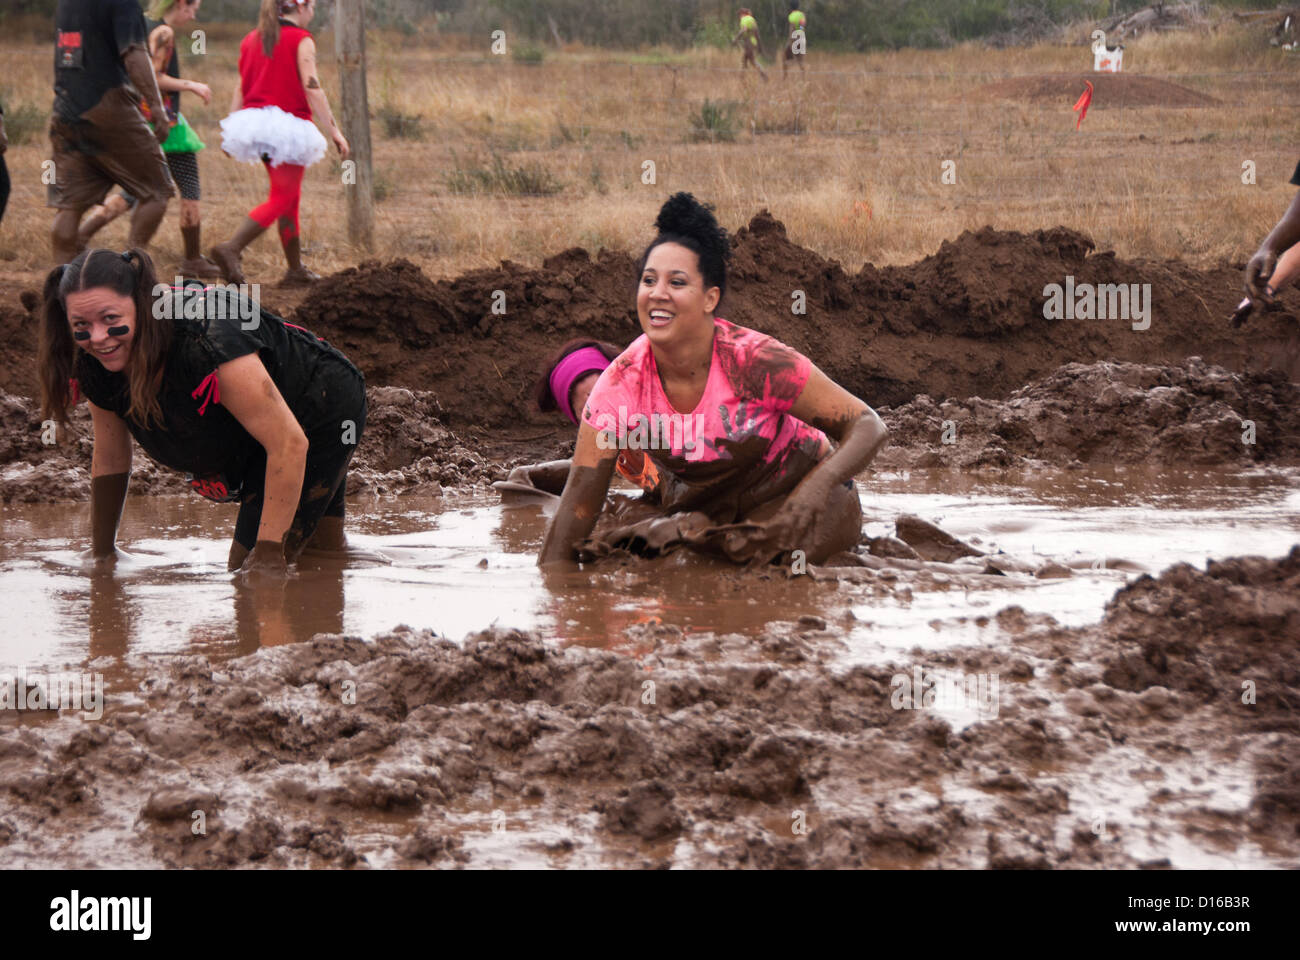 8 décembre 2012 San Antonio, Texas, USA - deux femmes se heurtent à un des nombreux obstacles boue pendant la Gladiator Rock'n courir à San Antonio. Banque D'Images